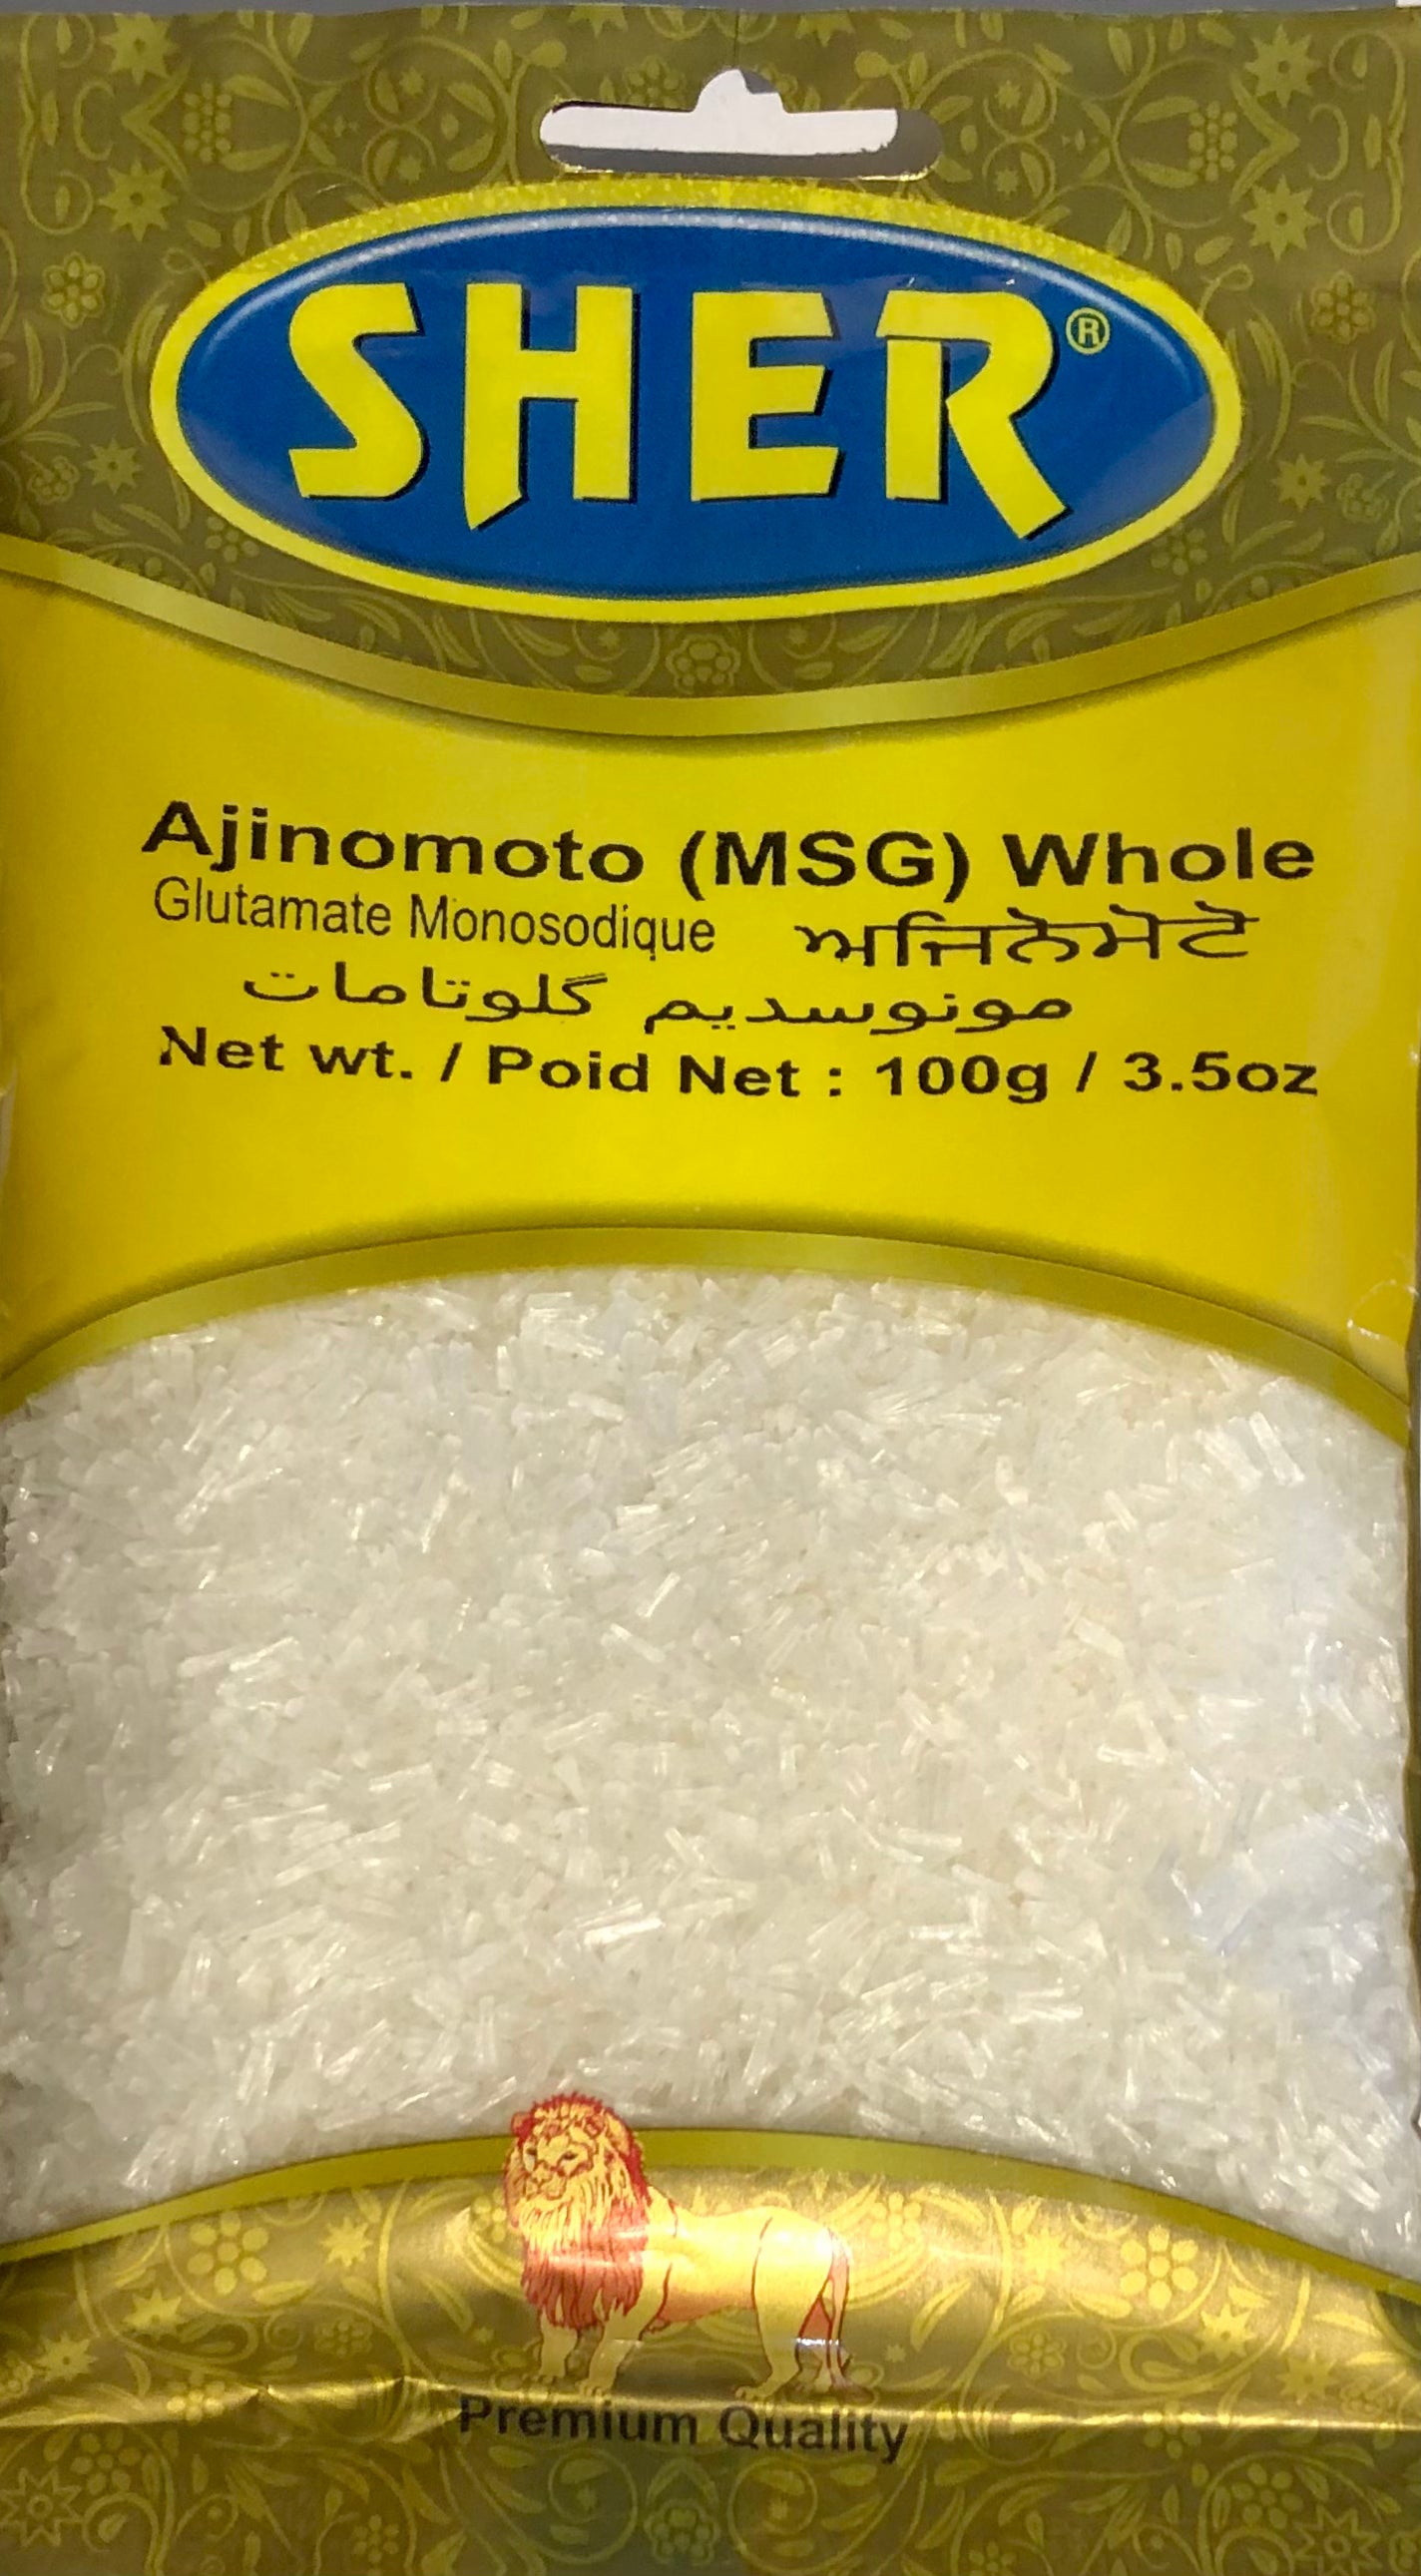 Ajinomoto Whole -  100gm - Sher